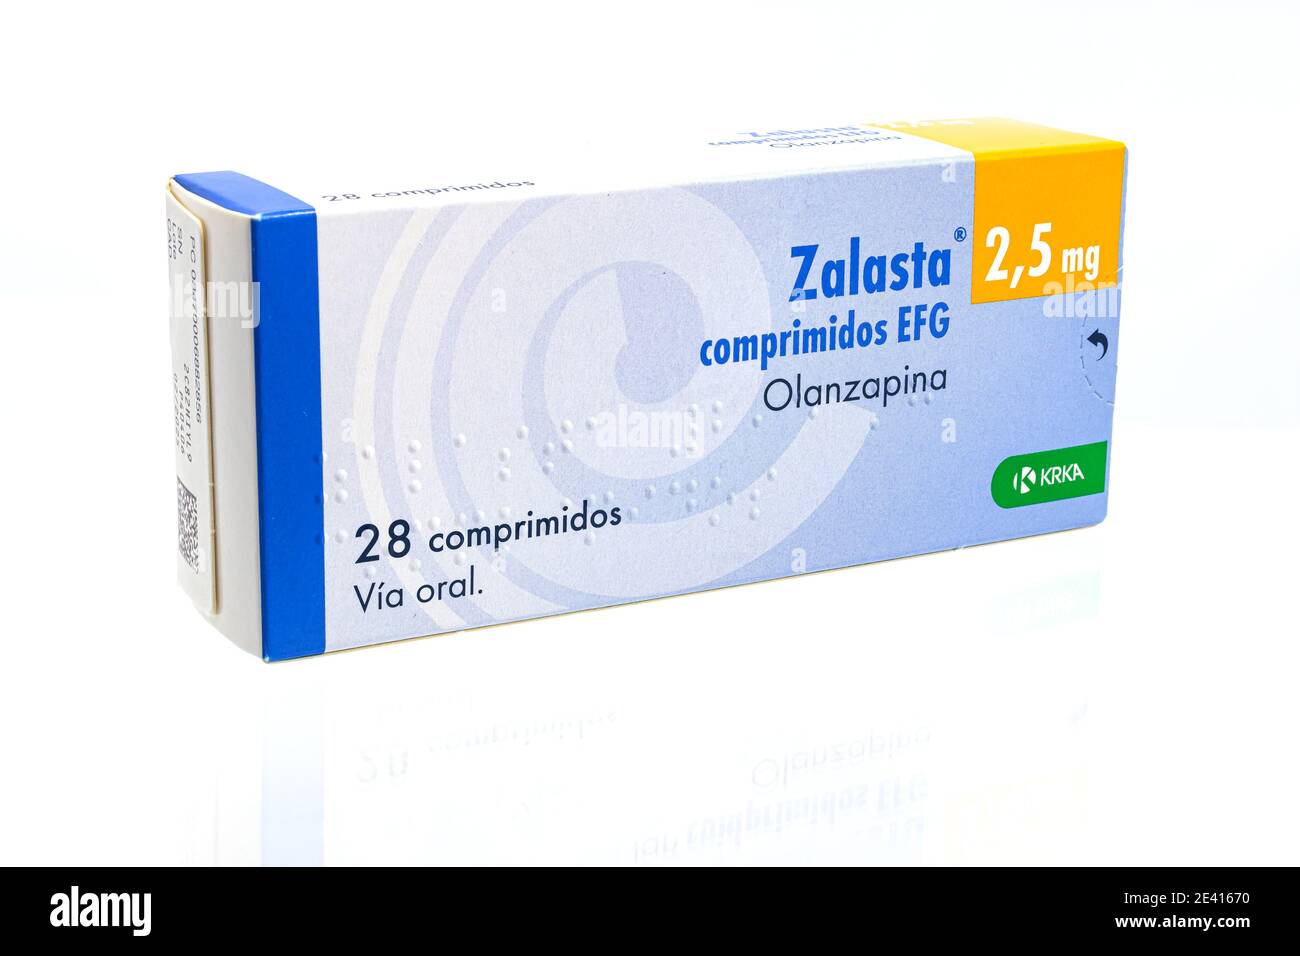 Huelva, Spanien-Januar 21,2021: Box von Olanzapin Marke Zalasta von KRKA Pharmaceutical, das atypische antipsychotische Medikament Olanzapin wurde eingesetzt Stockfoto